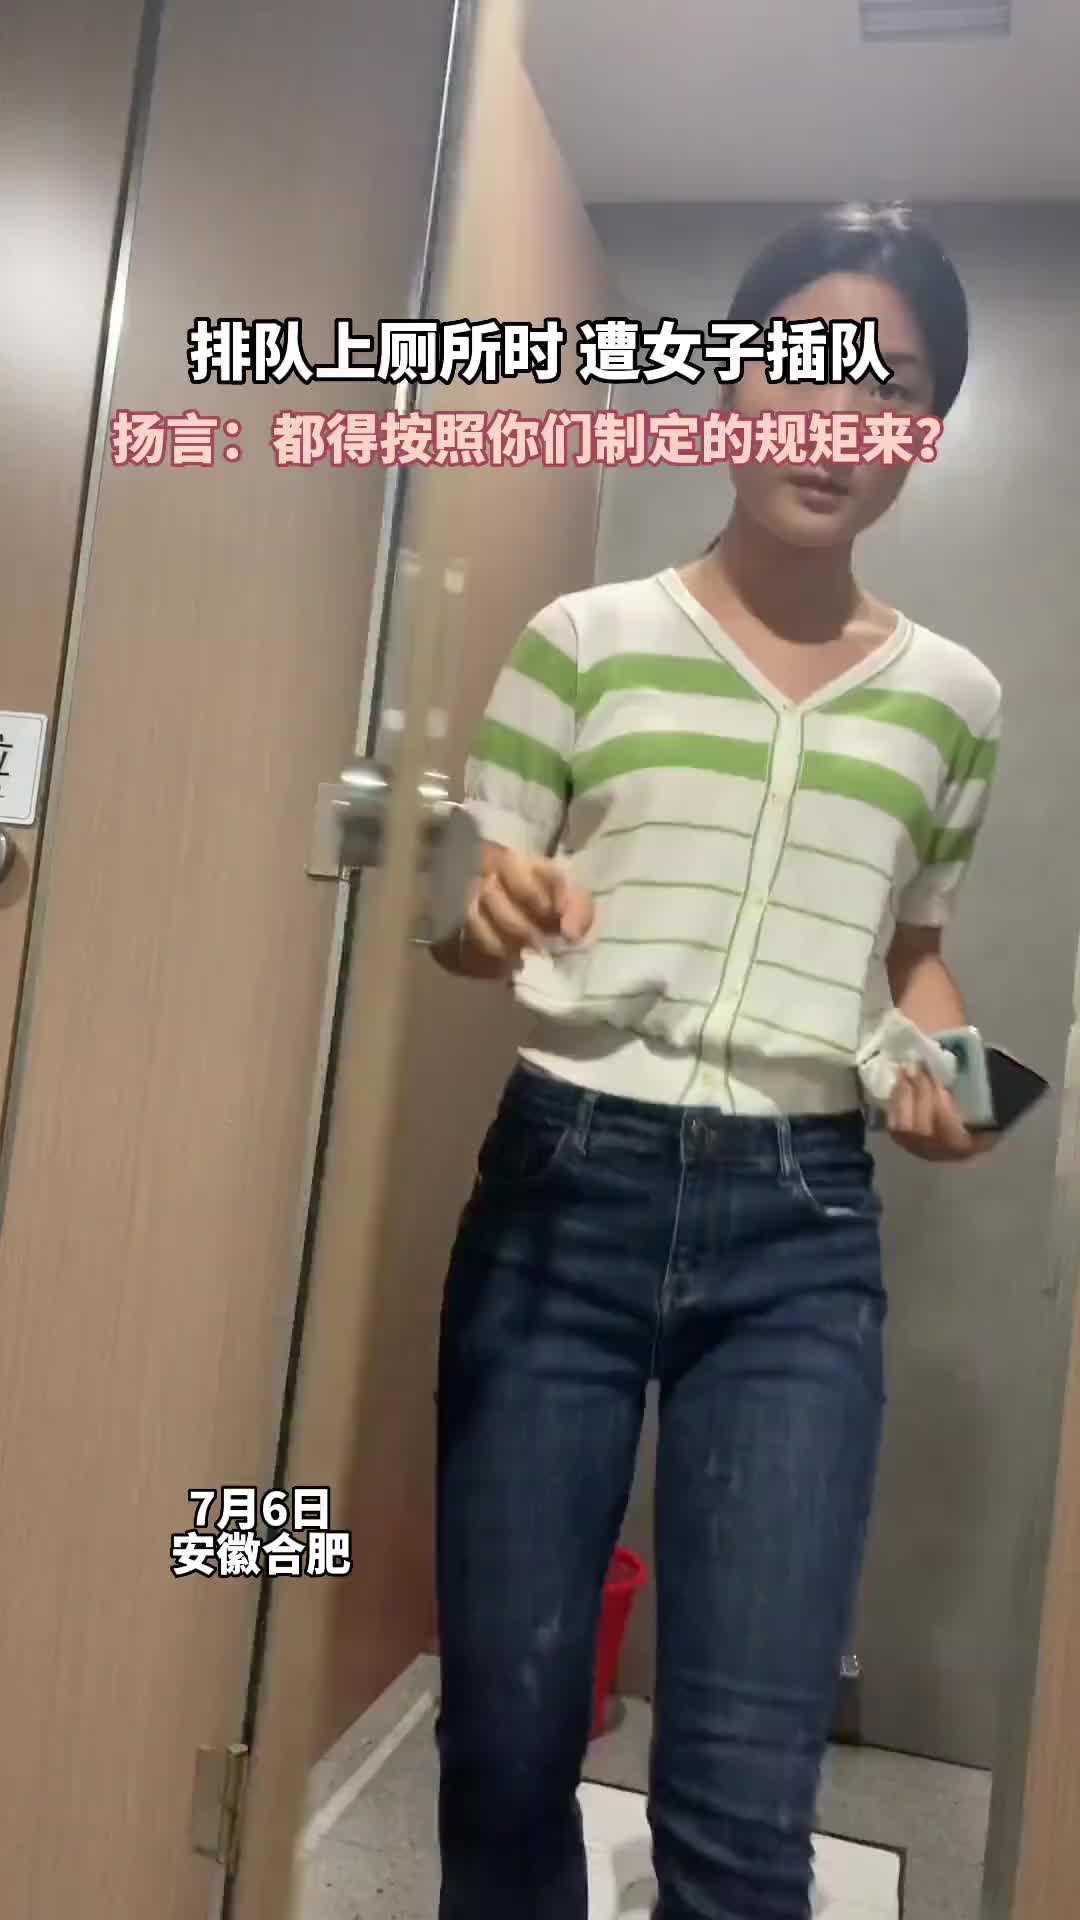 女子洗澡发现偷拍摄像头 合租公寓男室友被拘(图)_手机新浪网